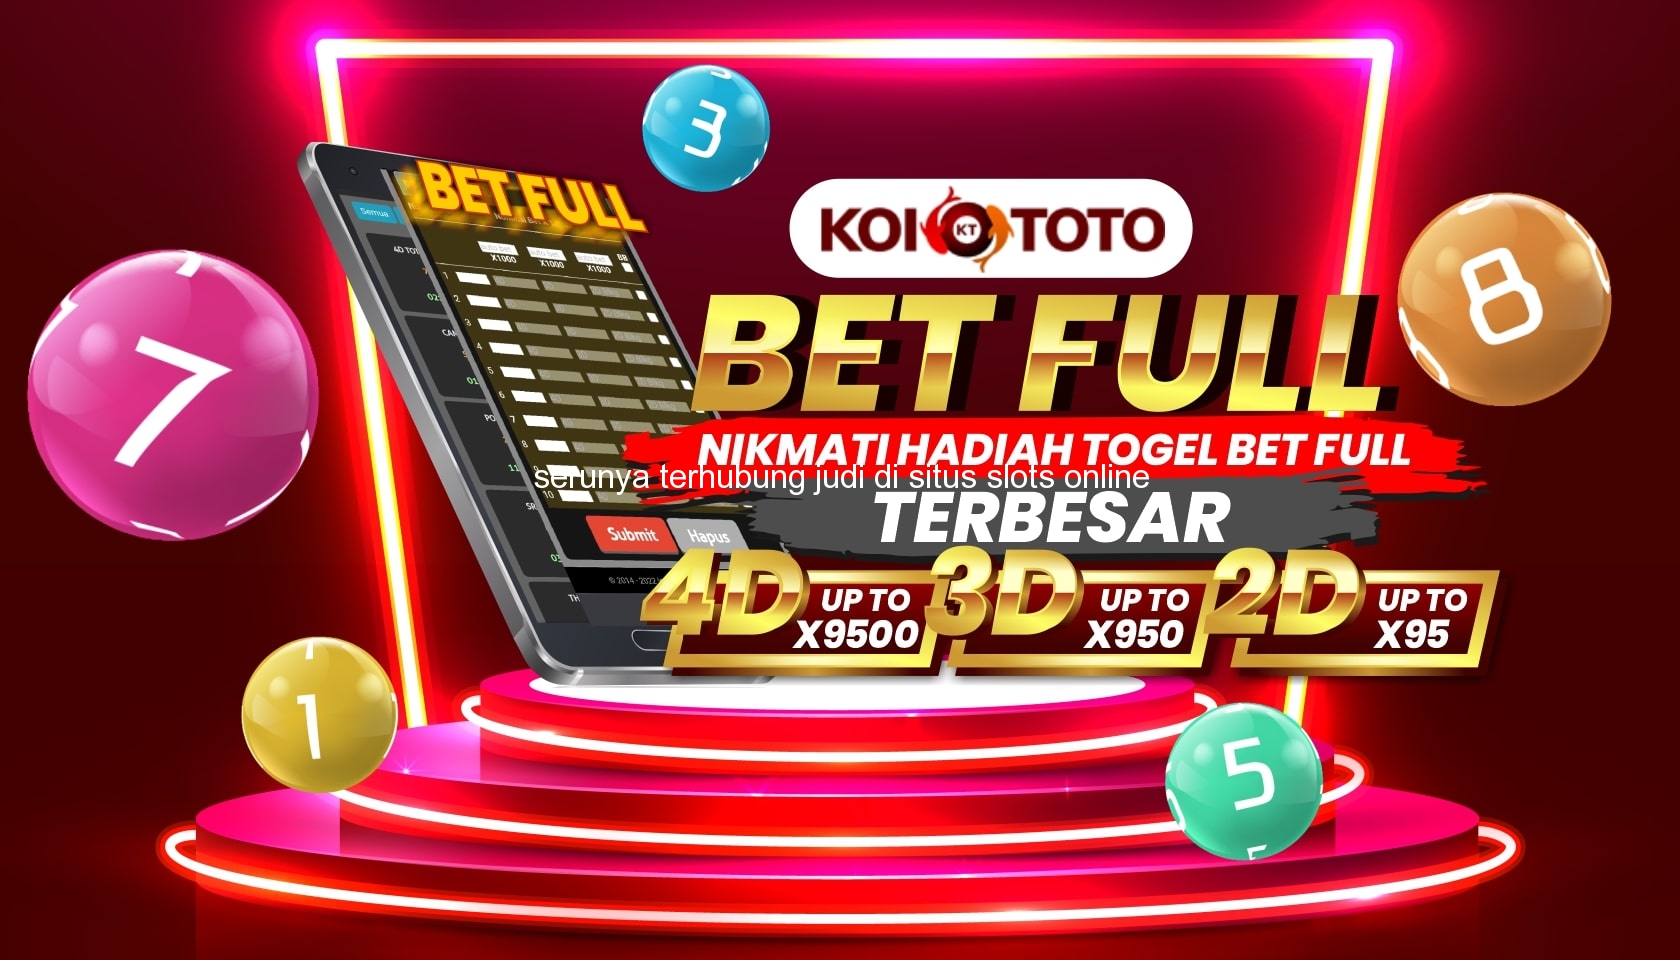 Serunya Terhubung Judi di Situs Slots Online Terunggul di Karamat – KOITOTO